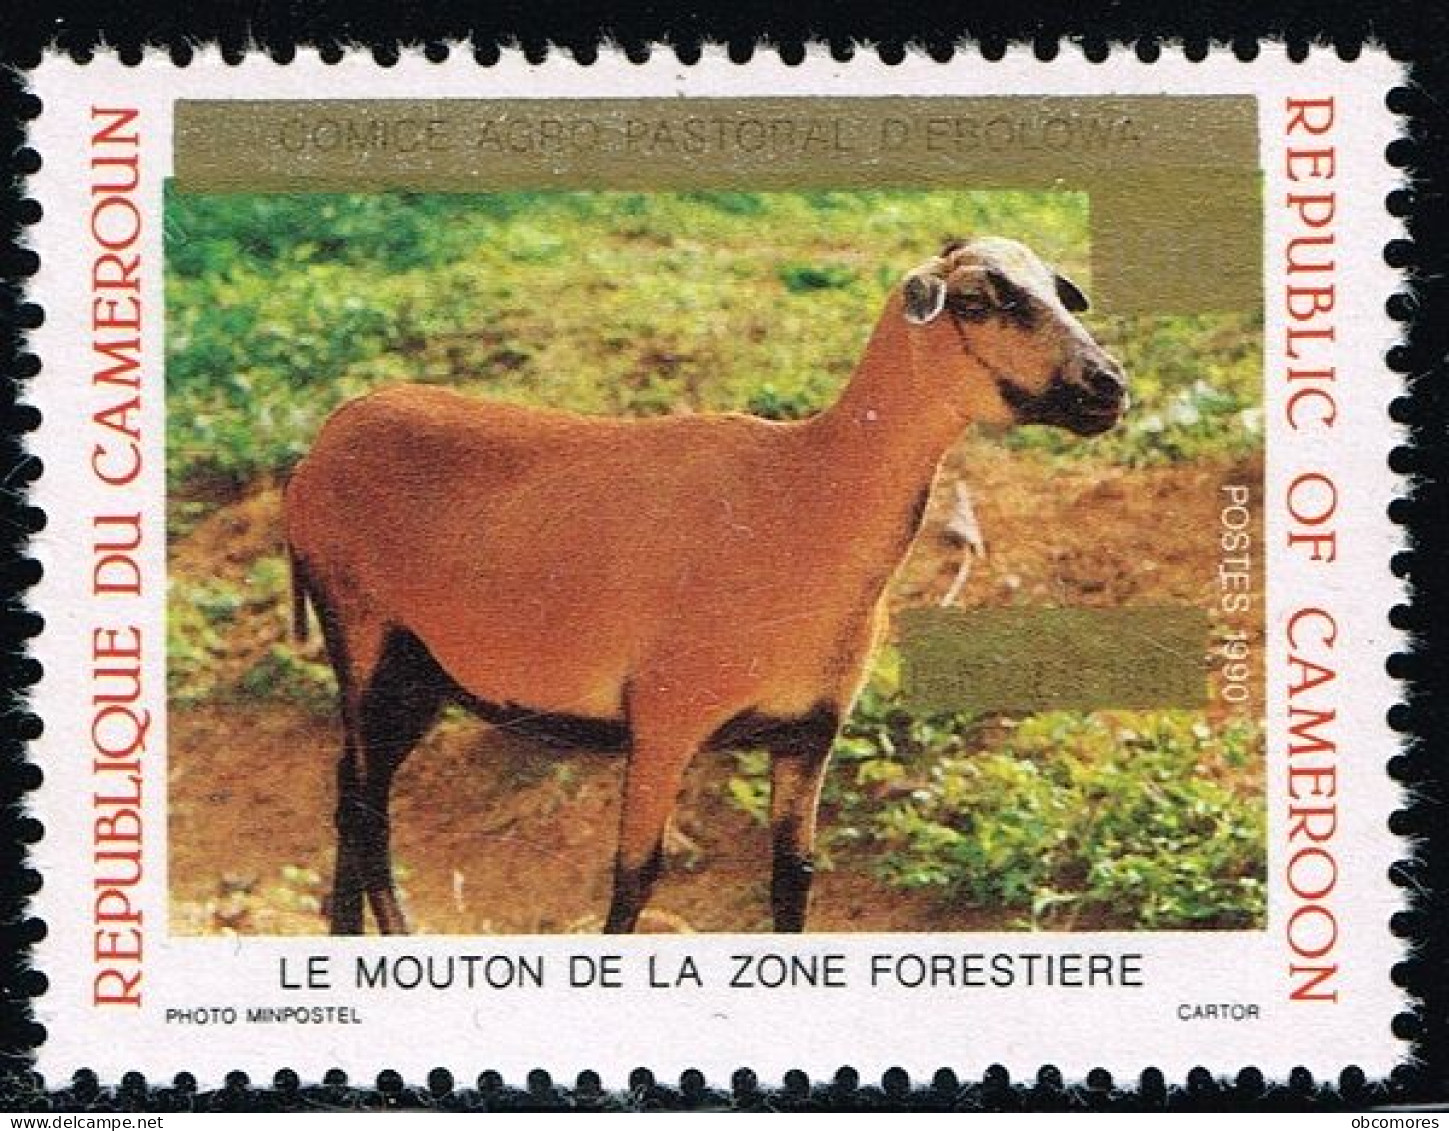 CAMEROUN Cameroon Kamerun 1993 Mouton Sheep Mi 1199 Sc 895 Overprint But Without New Value 125 F! RARE - MNH ** - Camerún (1960-...)